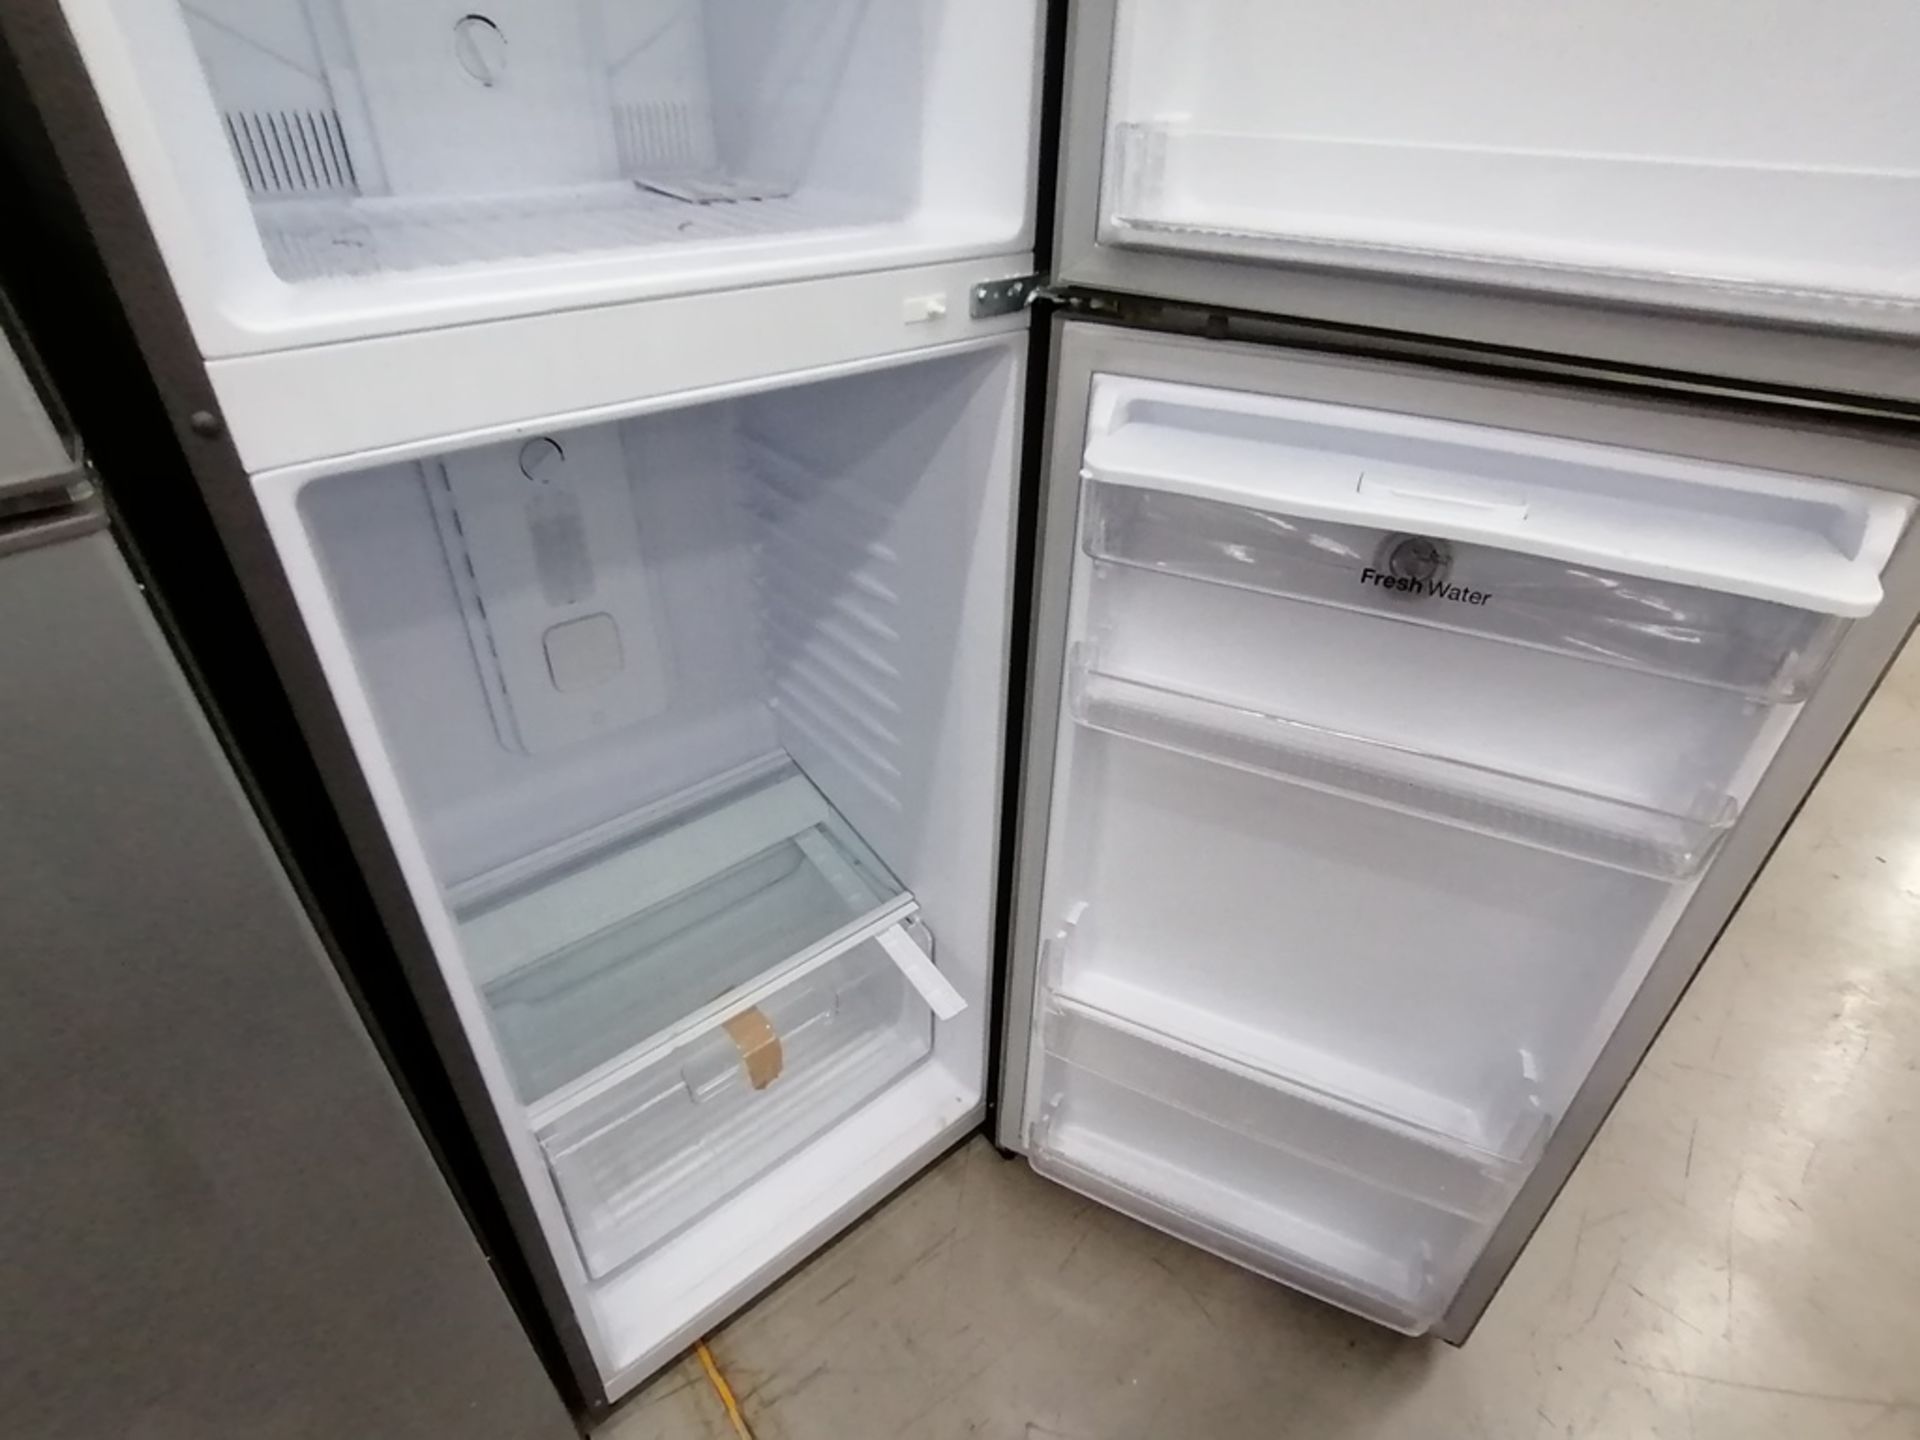 Lote de 2 refrigeradores incluye: 1 Refrigerador, Marca Winia, Modelo DFR40510GNDG, Serie MR21YN107 - Image 5 of 15